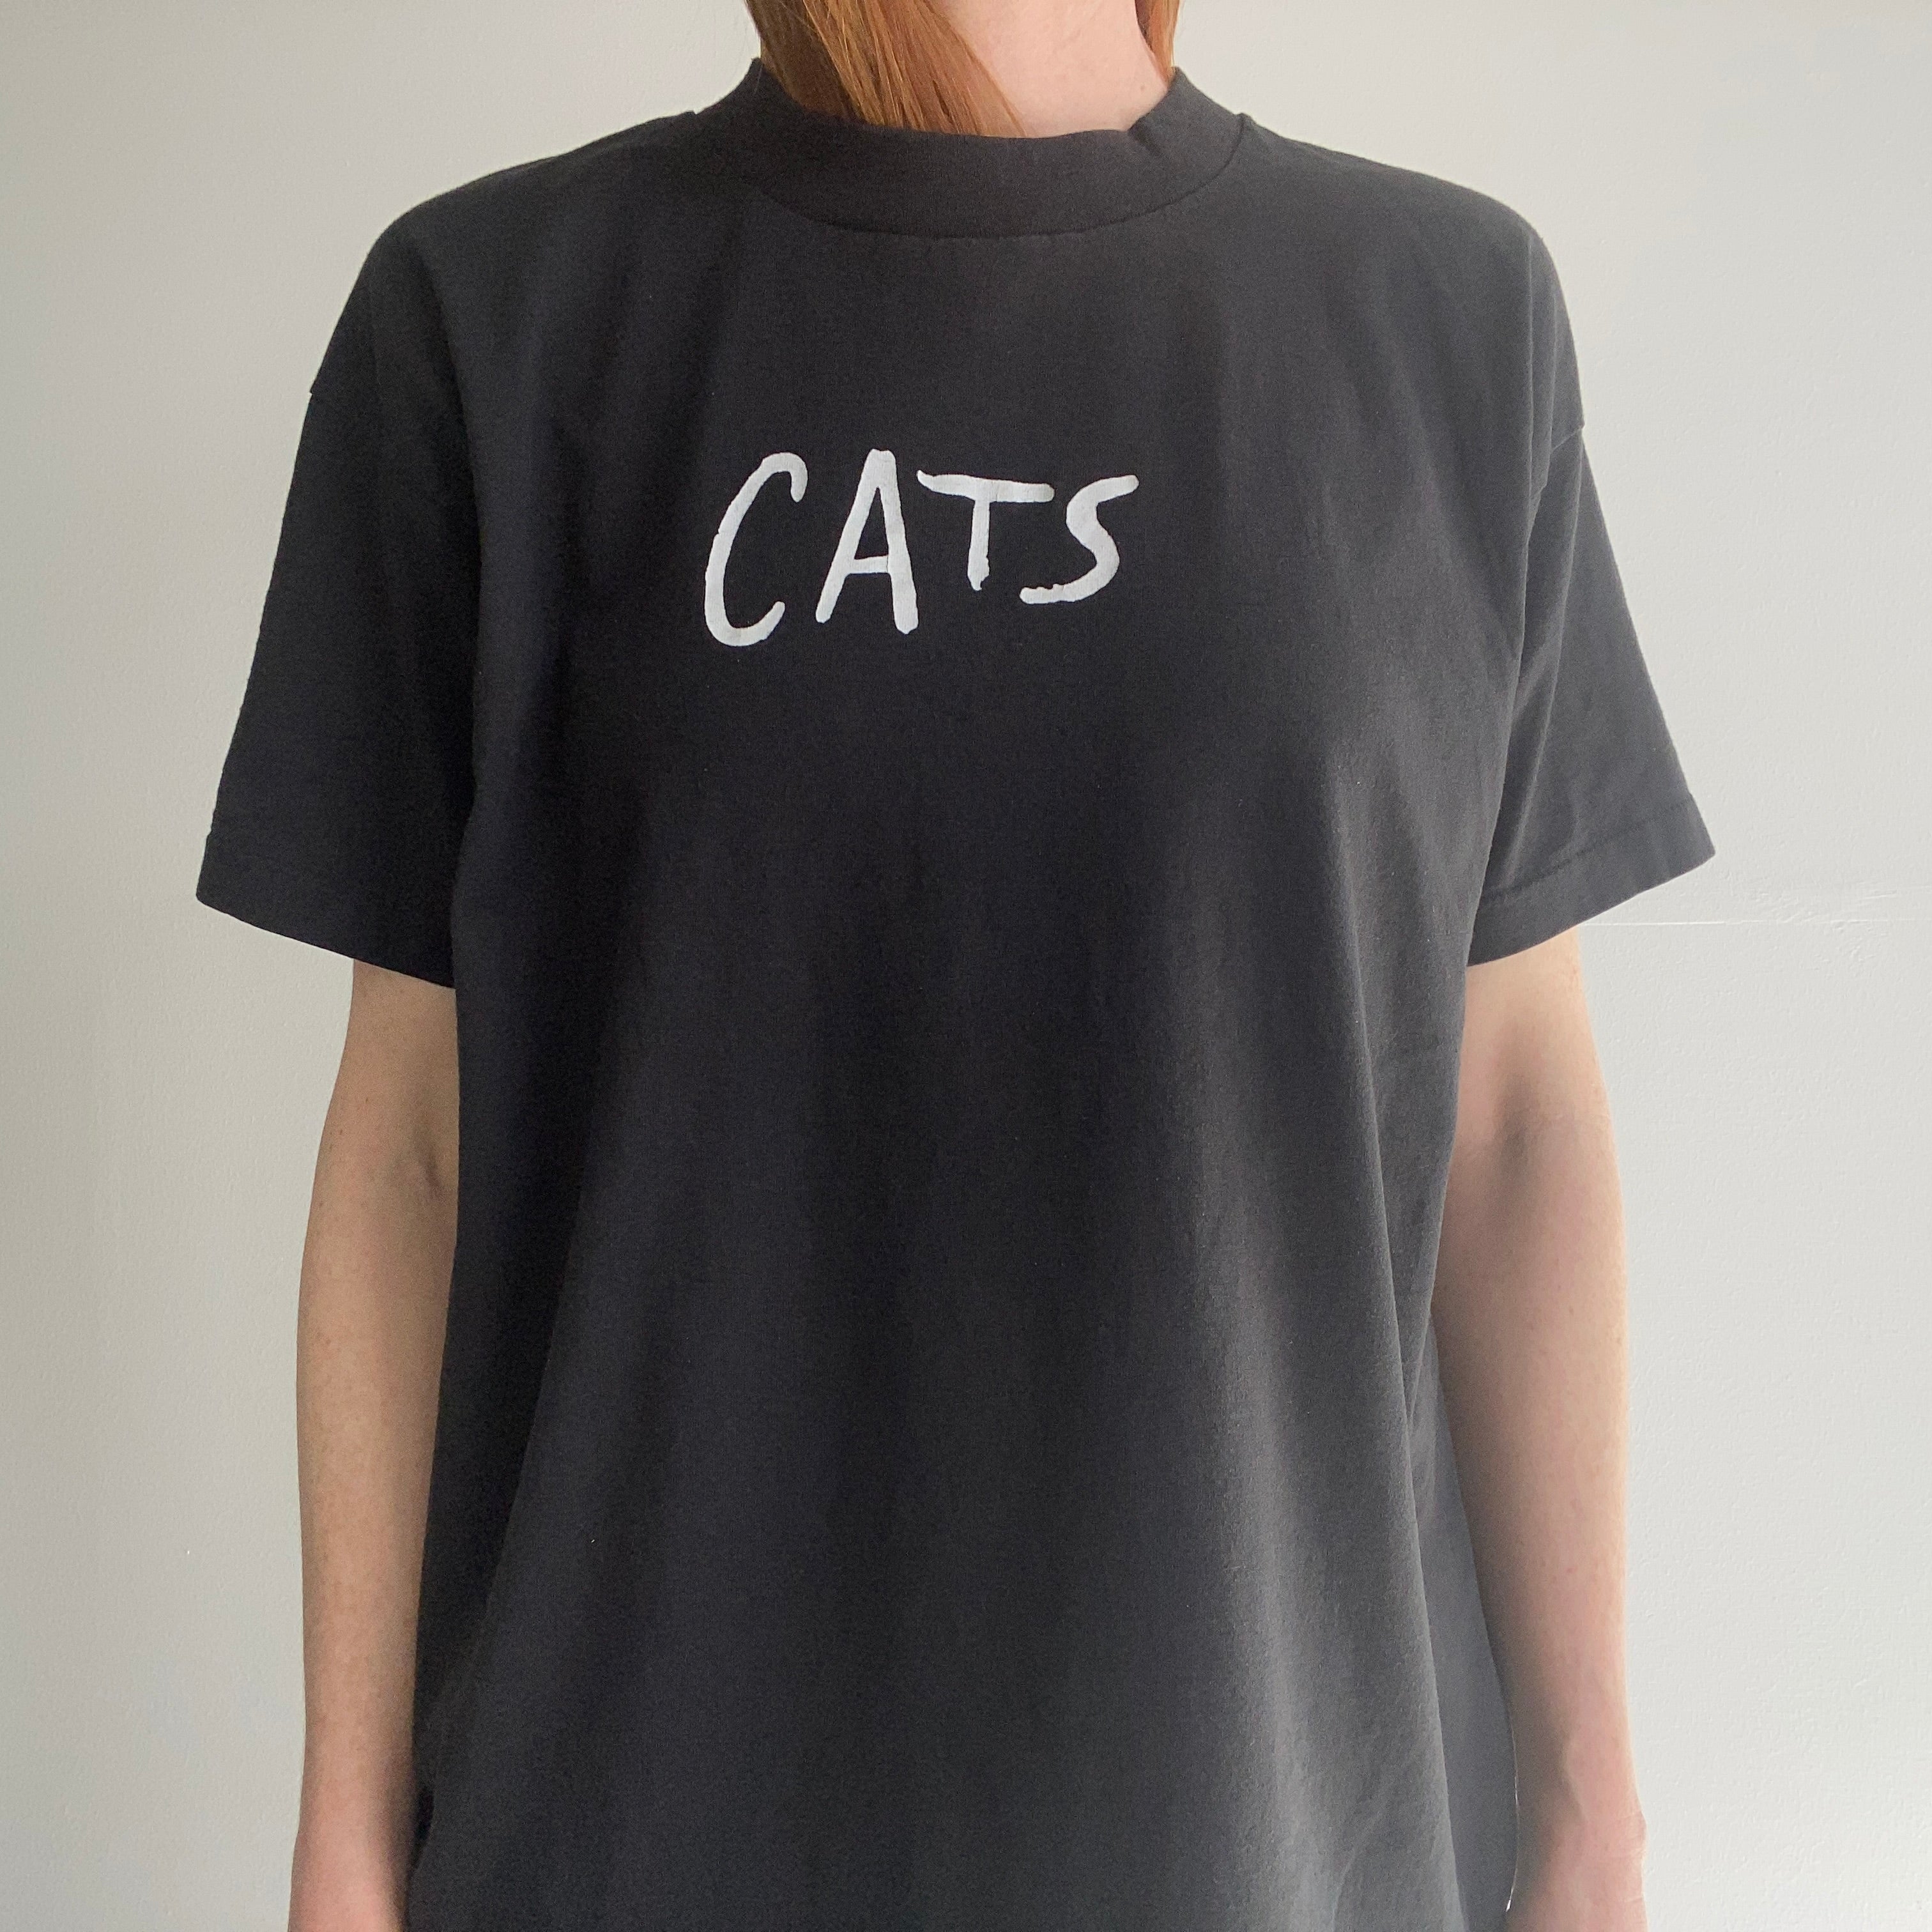 T-shirt FOTL BEST CATS (The Musical) des années 1980 - Le dos est important